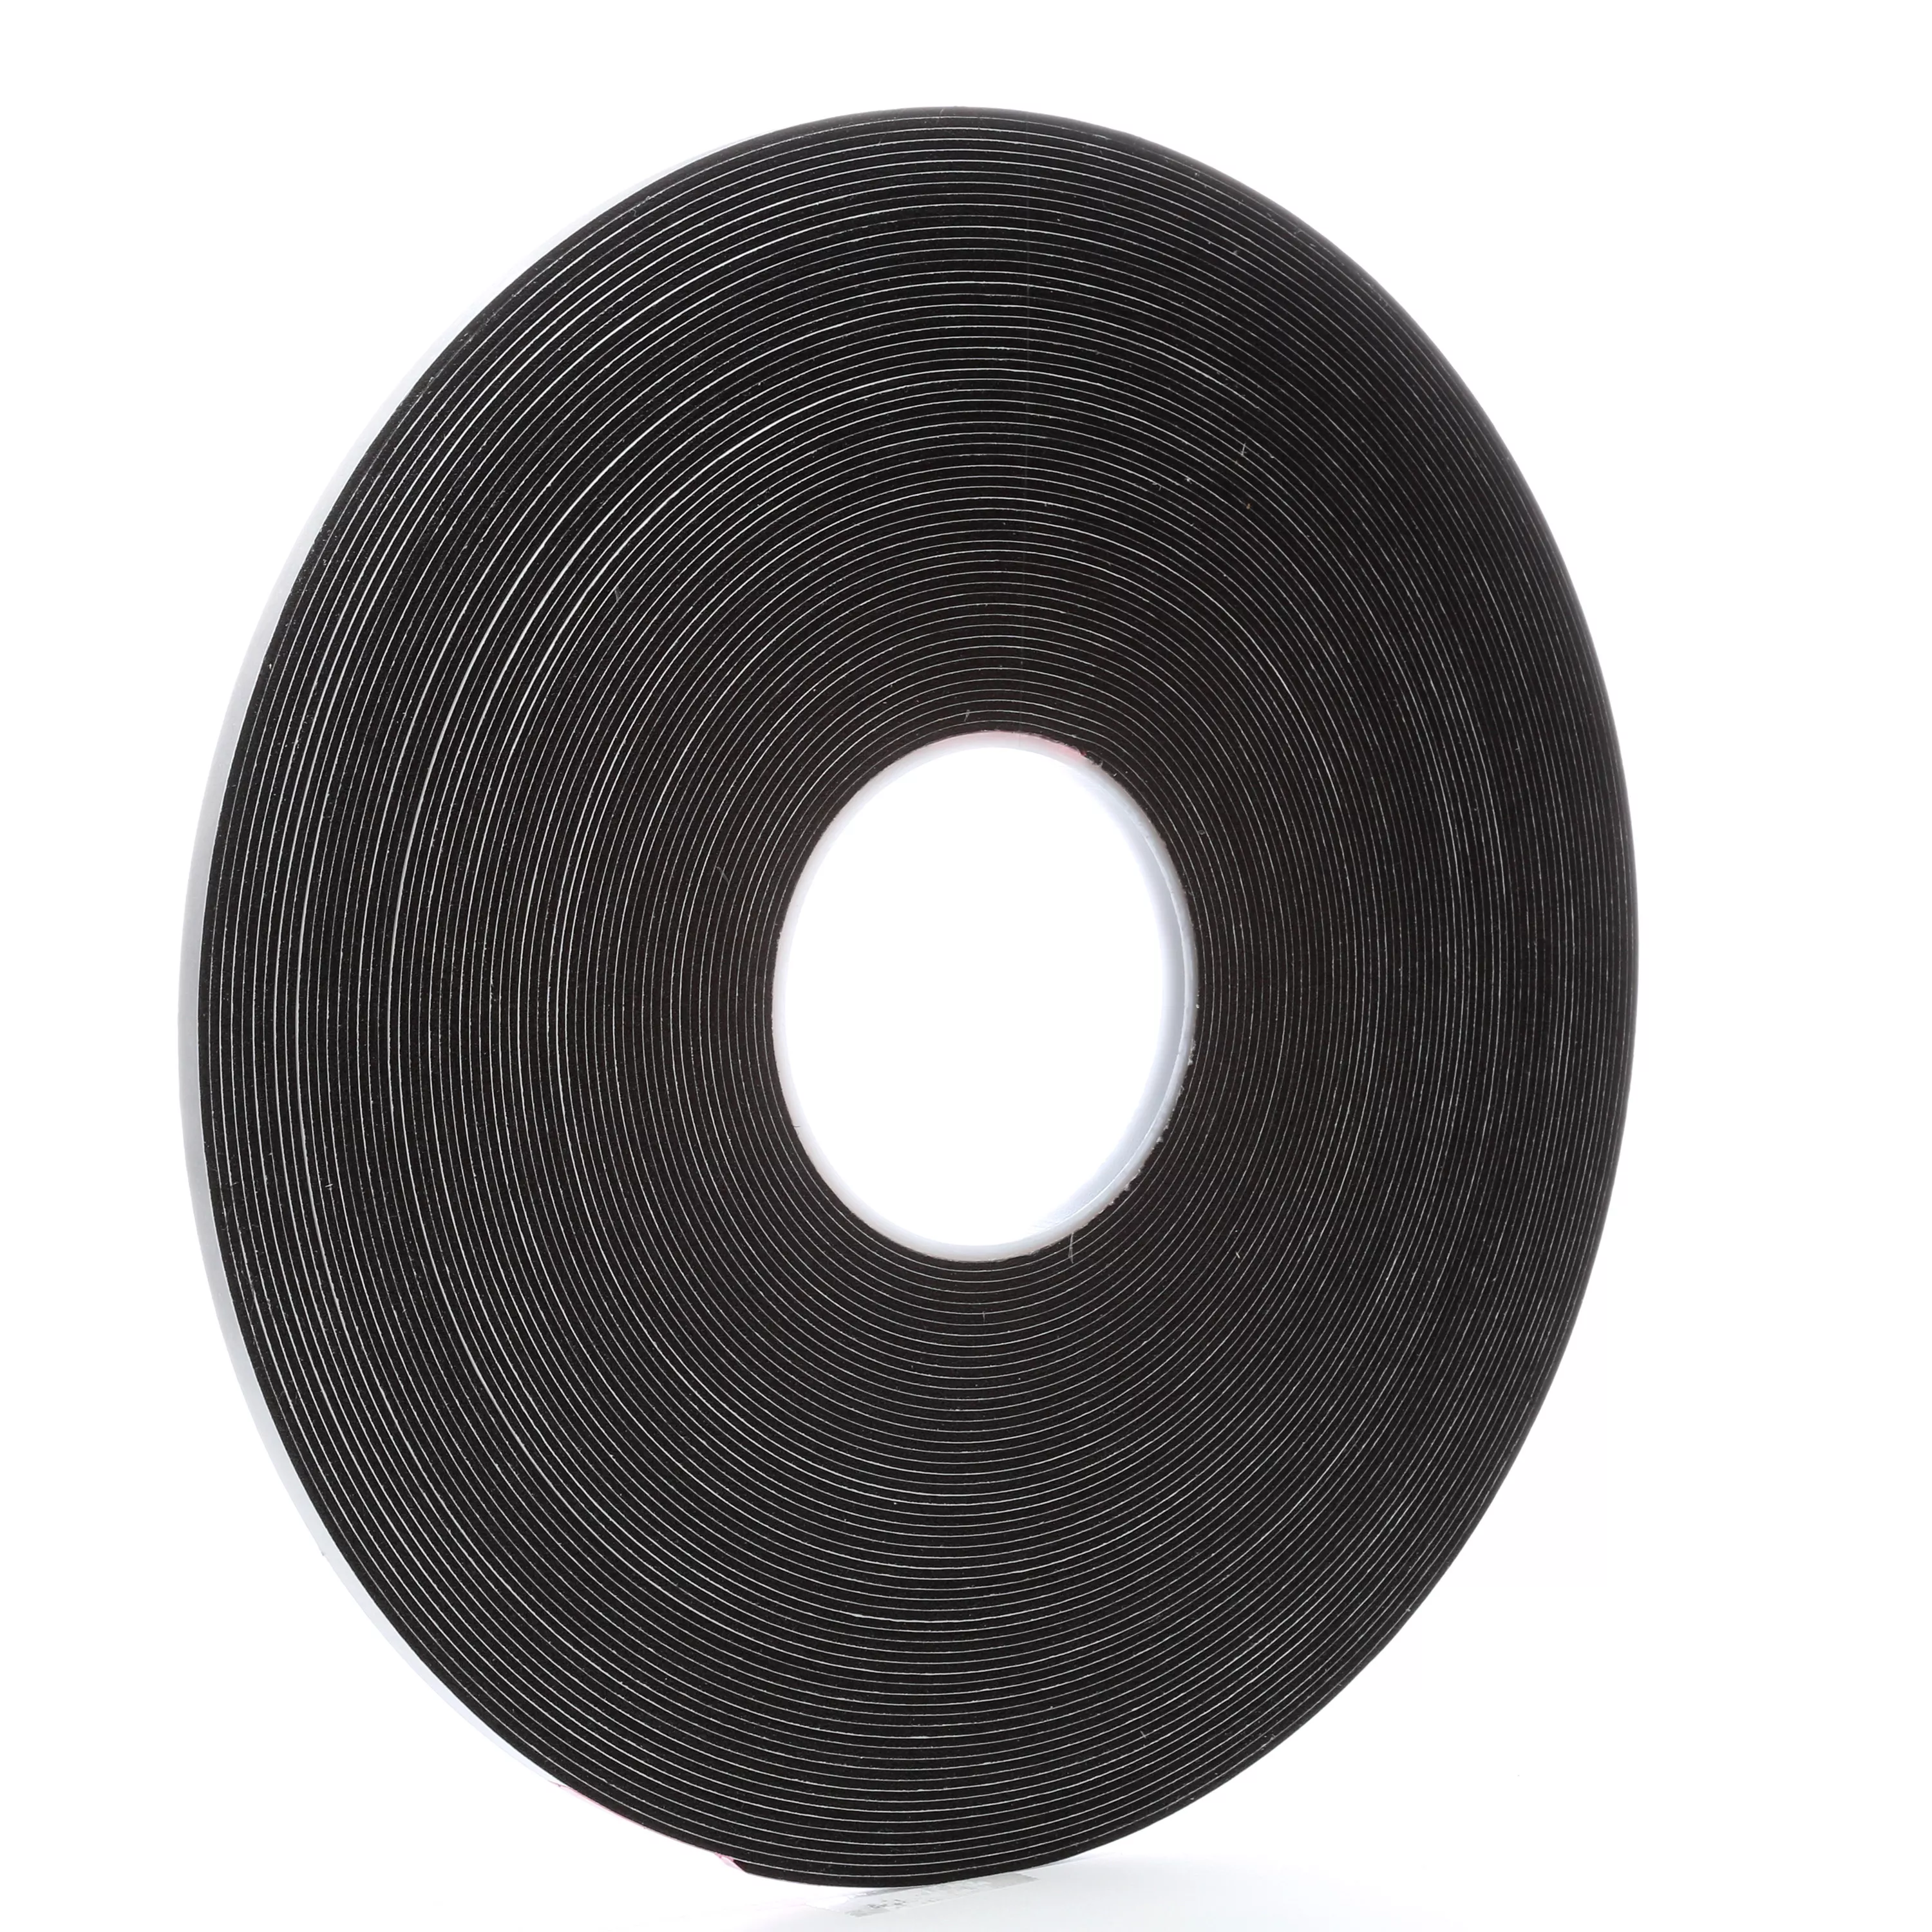 3M™ Vinyl Foam Tape 4516, Black, 1/4 in x 36 yd, 62 mil, 36 Roll/Case